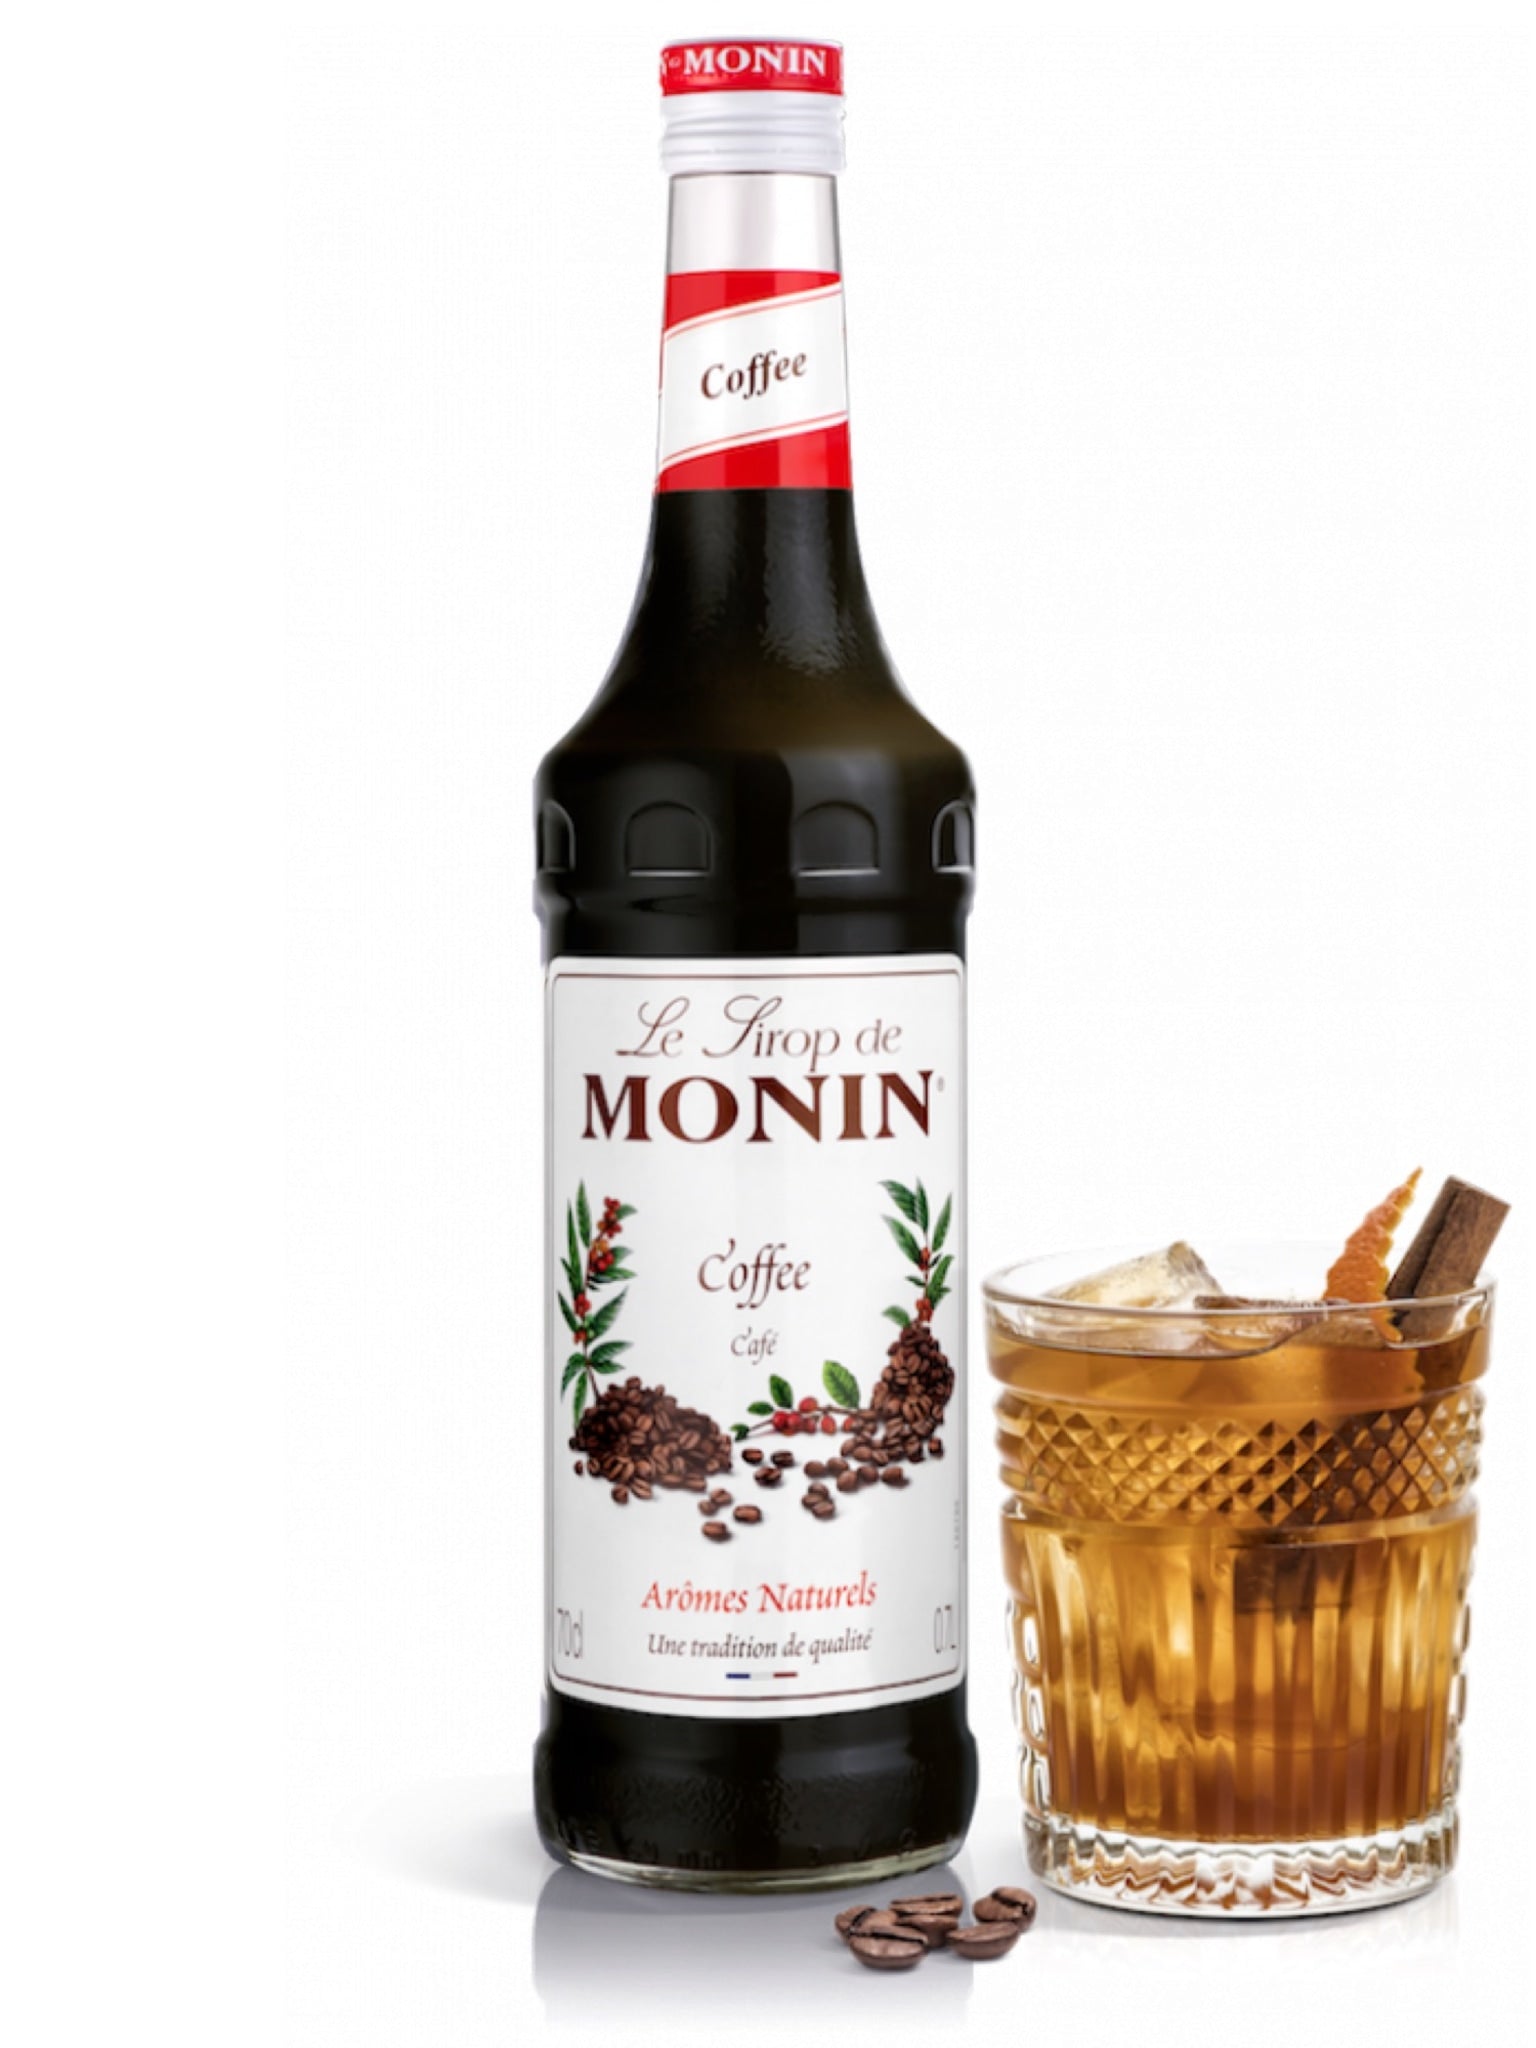 Lad Monin Kaffe Sirup være din partner i at skabe velsmagende og forfriskende kaffedrin